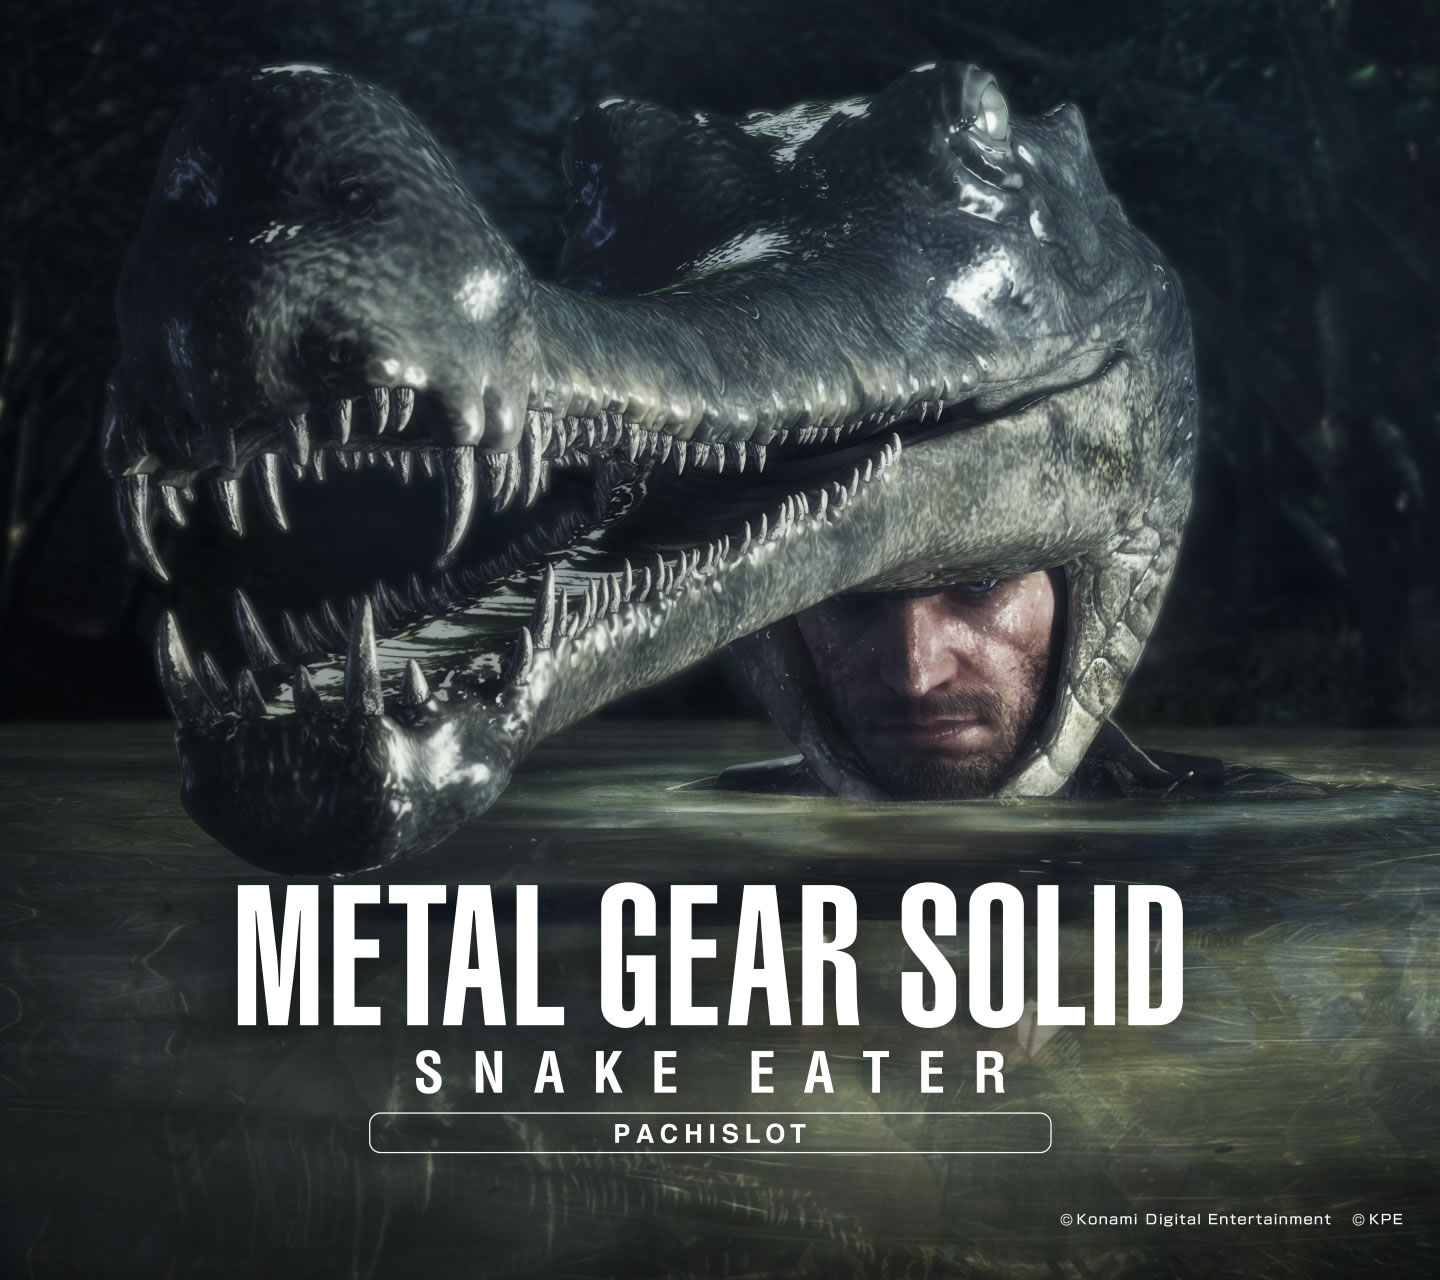 Des fonds d'cran pour Metal Gear Solid 3 version Pachinko